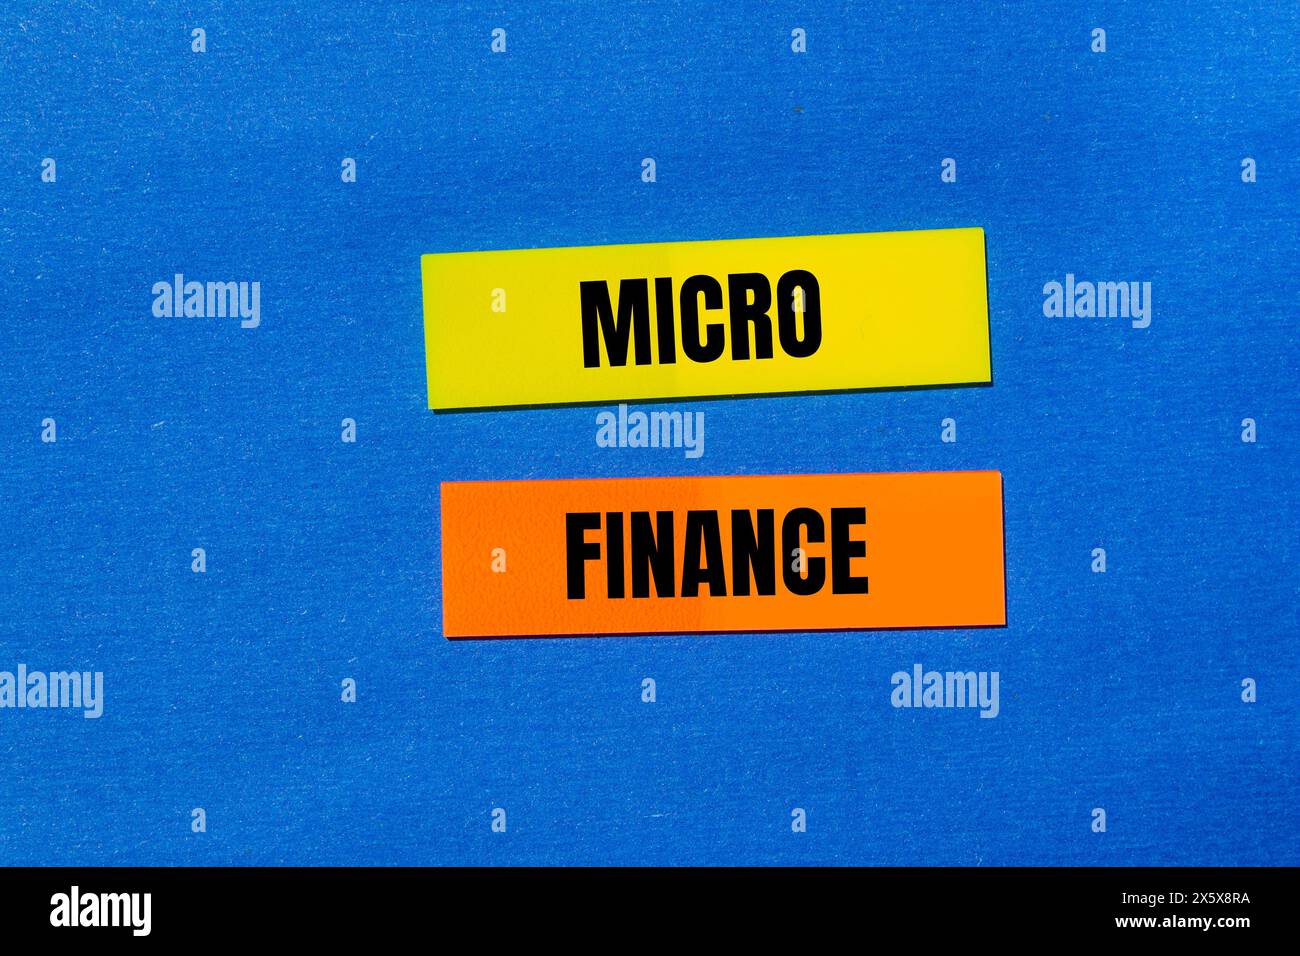 Wörter aus dem Mikrofinanzbereich auf bunten Papieraufklebern mit blauem Hintergrund. Konzeptionelles Geschäftssymbol für Mikrofinanzen. Kopierbereich. Stockfoto